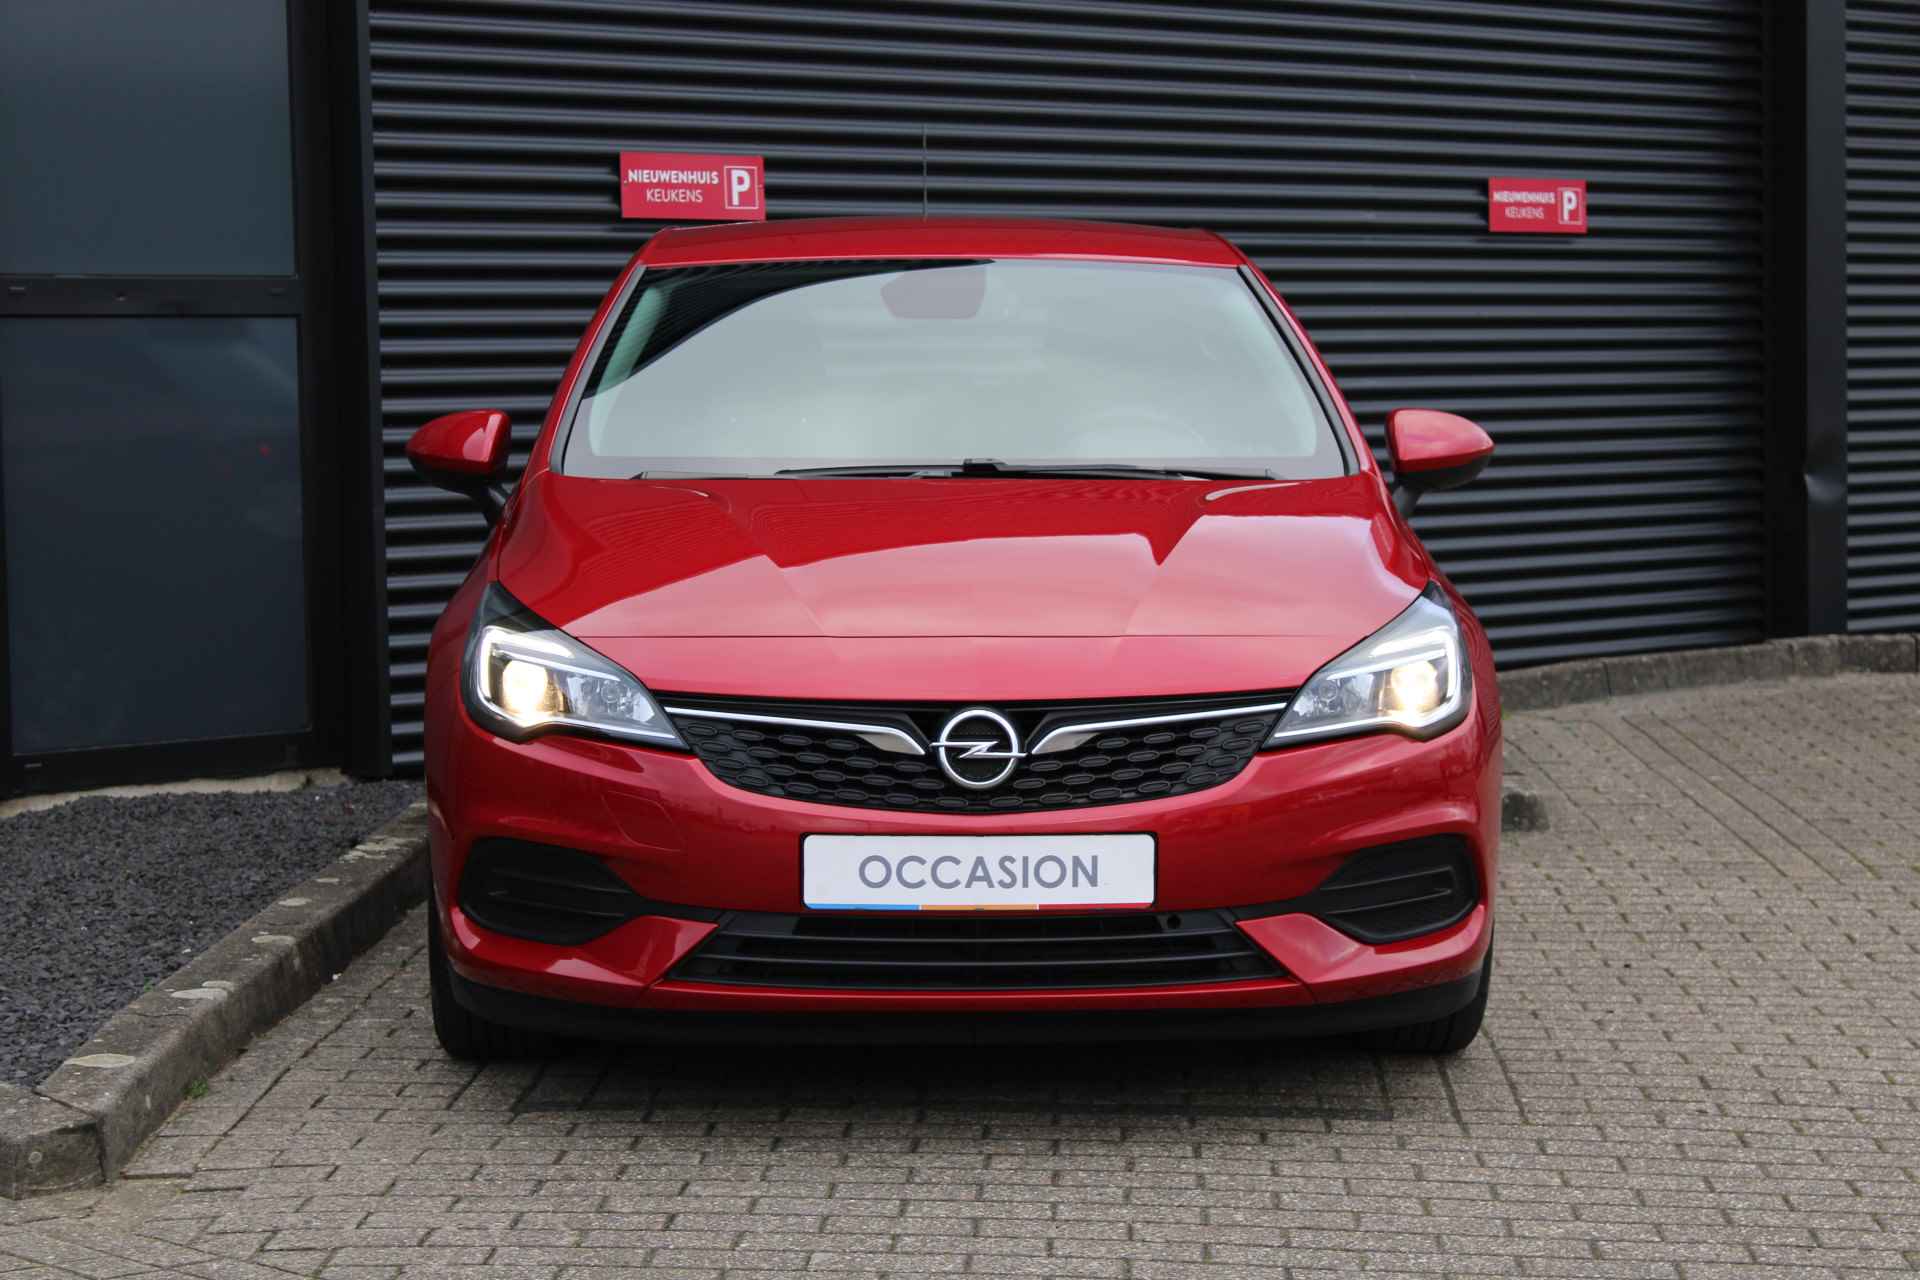 Opel Astra 1.2 T 110 pk 5drs Edition / Navigatie / Parkeersensoren / Airco / Cruise Control / Carplay / '' vraag een vrijblijvende offerte aan '' - 12/26